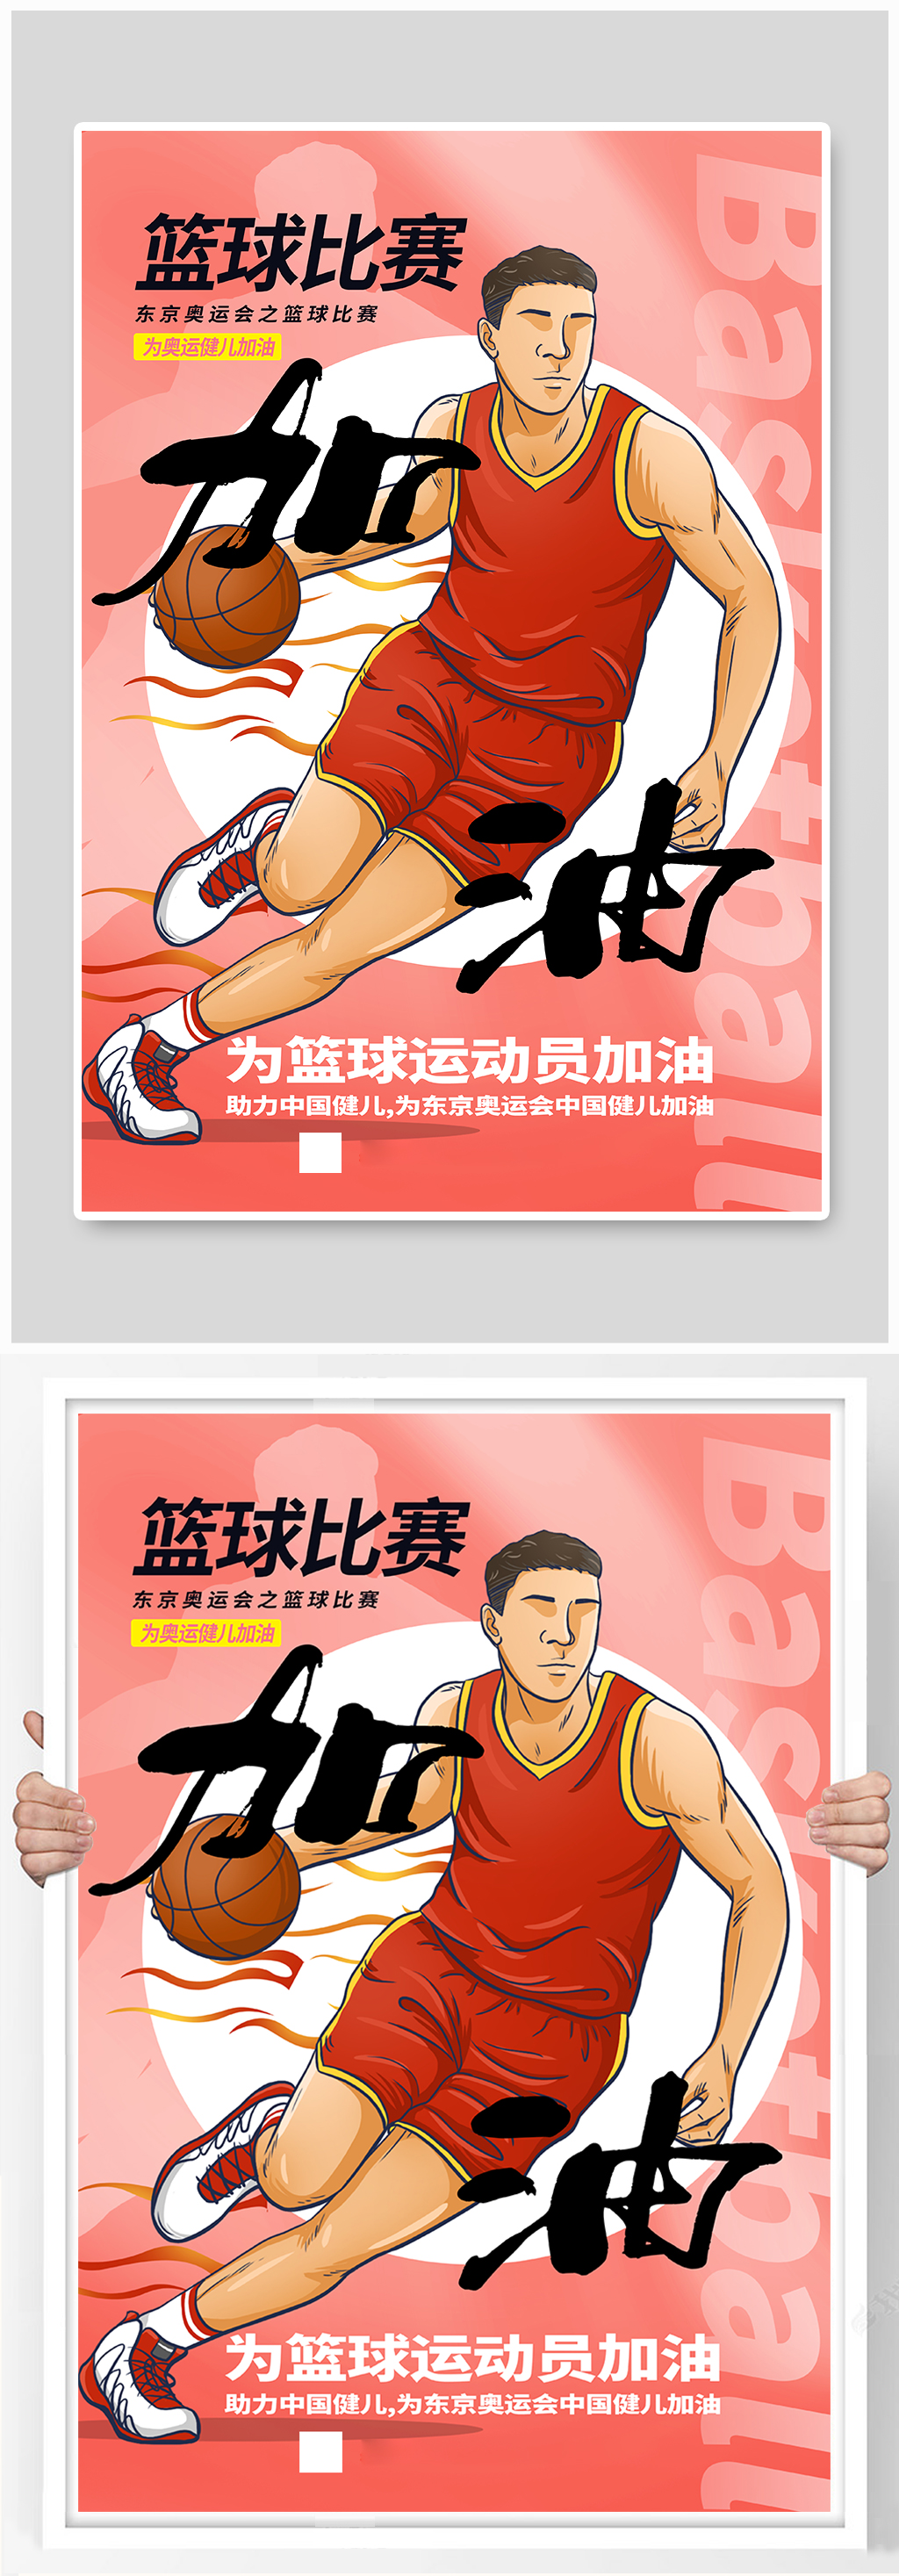 篮球比赛之东京奥运会海报